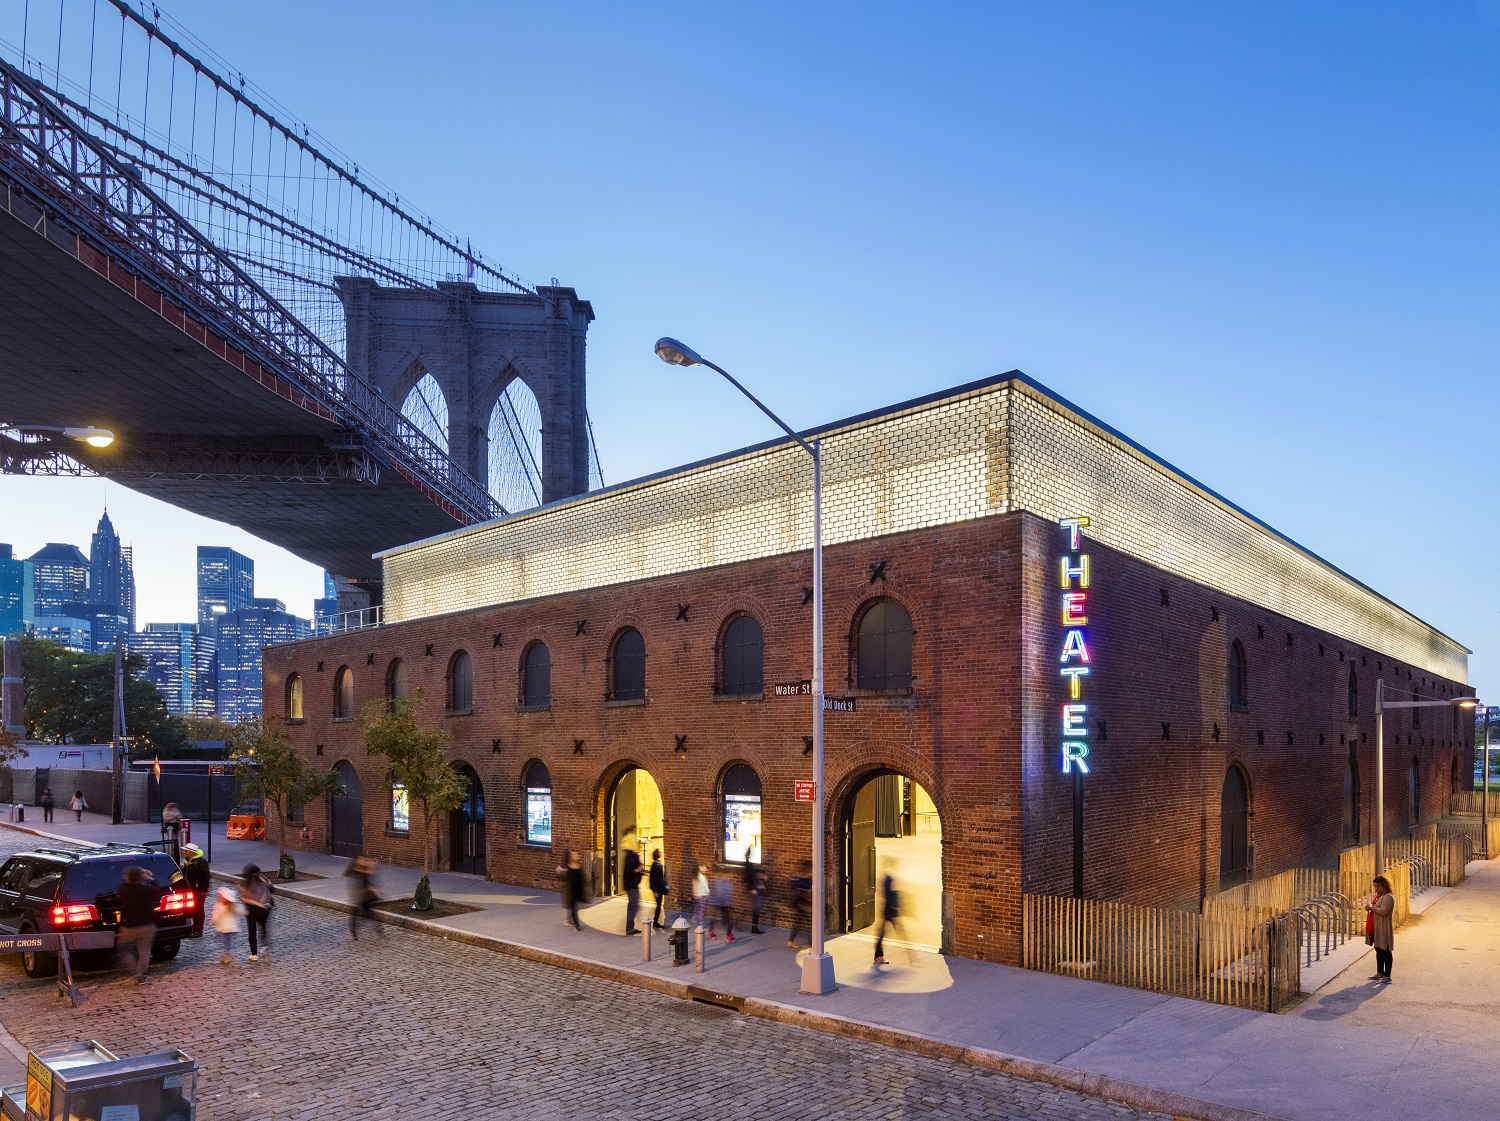 St Ann's Warehouse, Location: Brooklyn NY, Architect: Marvel Architects